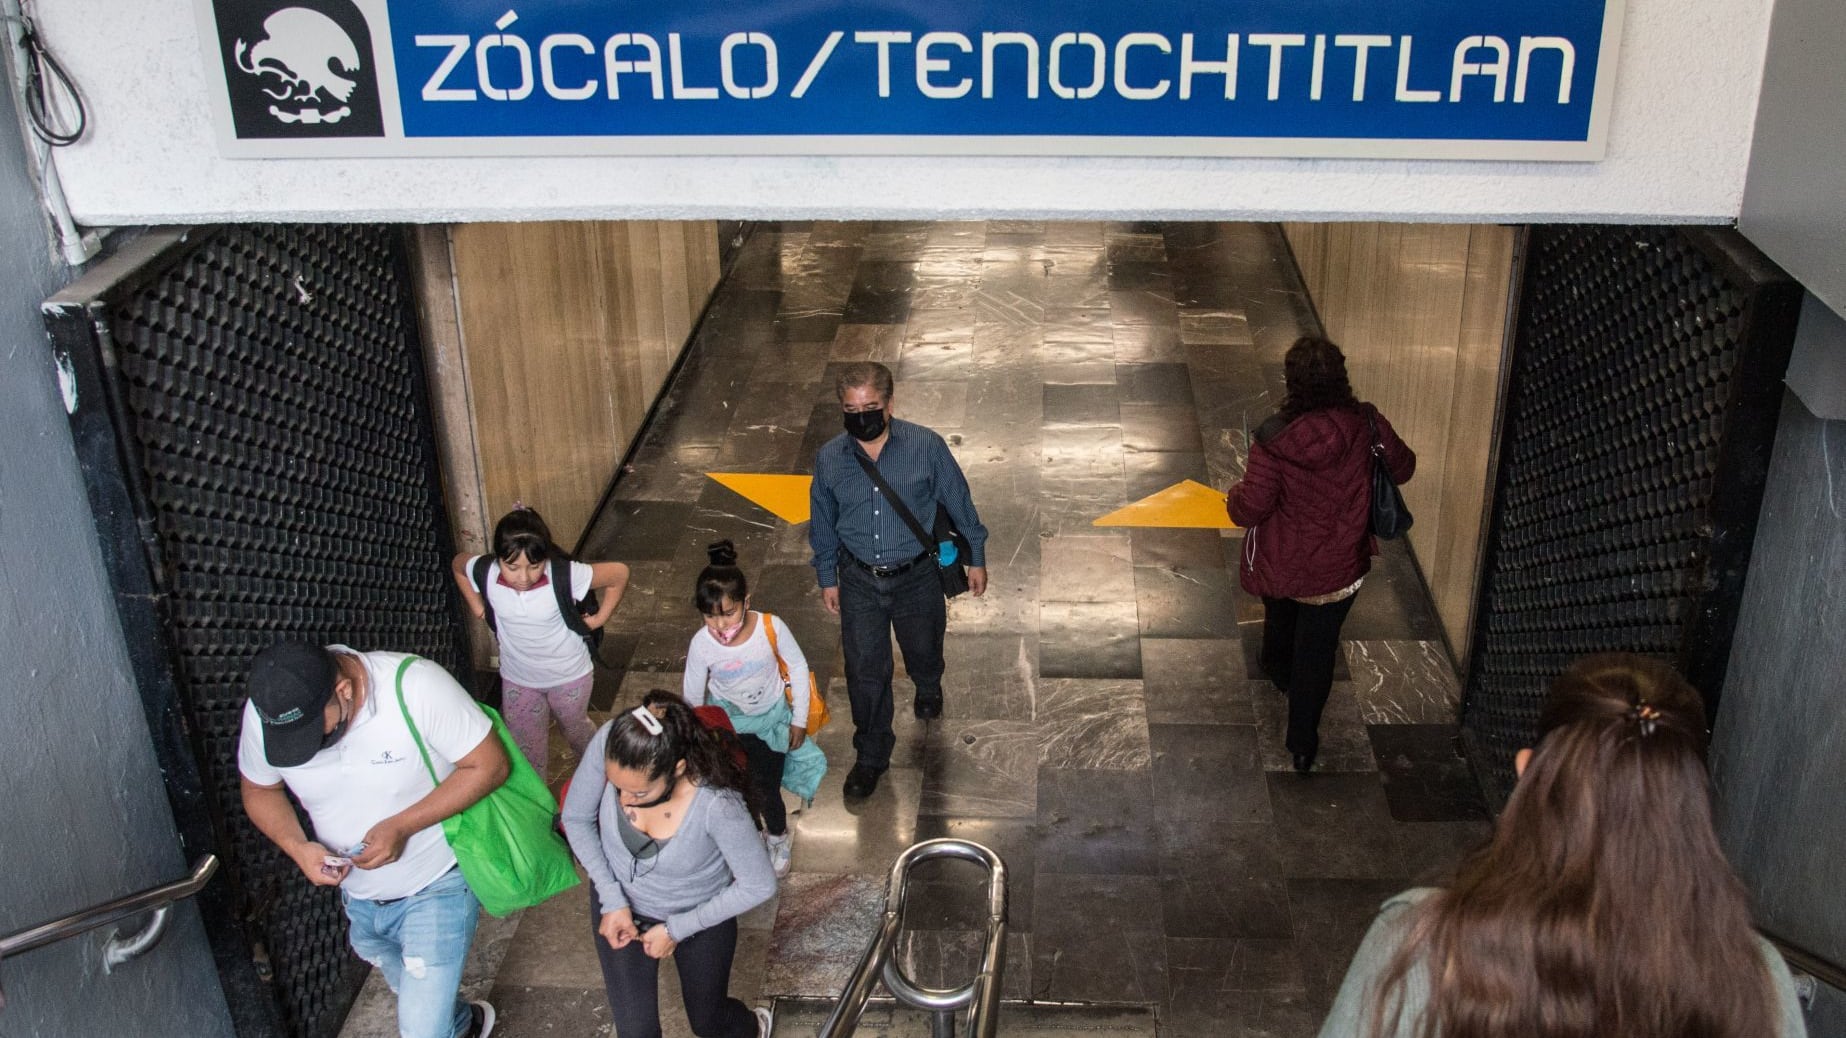 El nuevo letrero "Zócalo/Tenochtitlan" para la estación de la línea 2 del Sistema de Transporte Colectivo (STM) Metro puede ser ya observado en uno de los accesos principales.